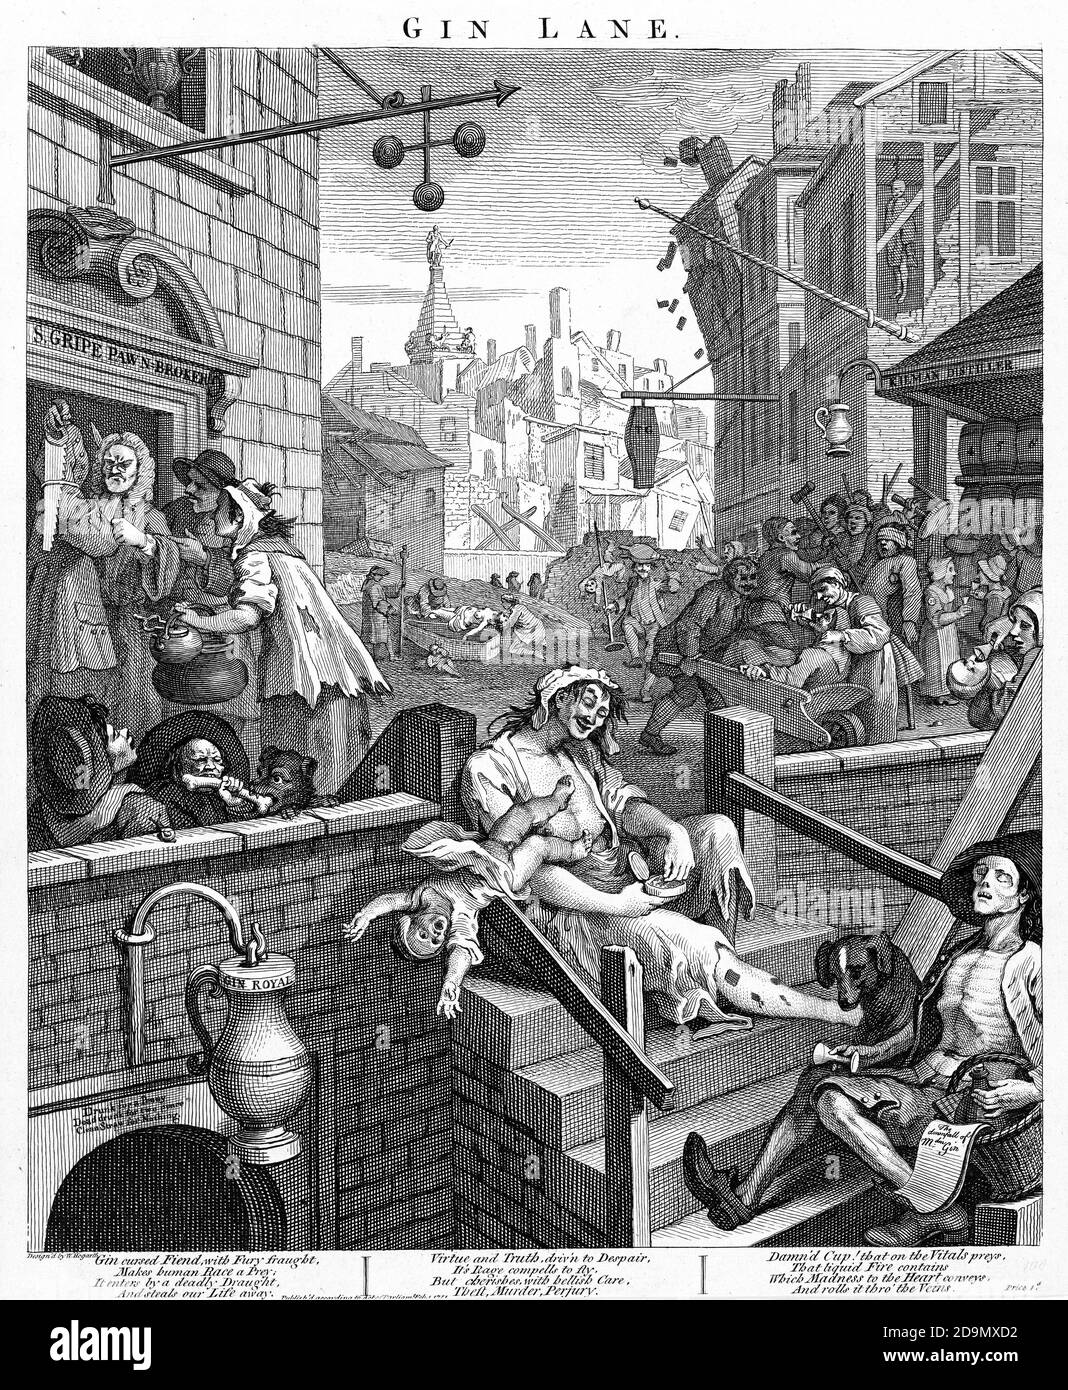 Gin Lane von William Hogarth (1697-1764), Radierung und Gravur, 1751 Stockfoto